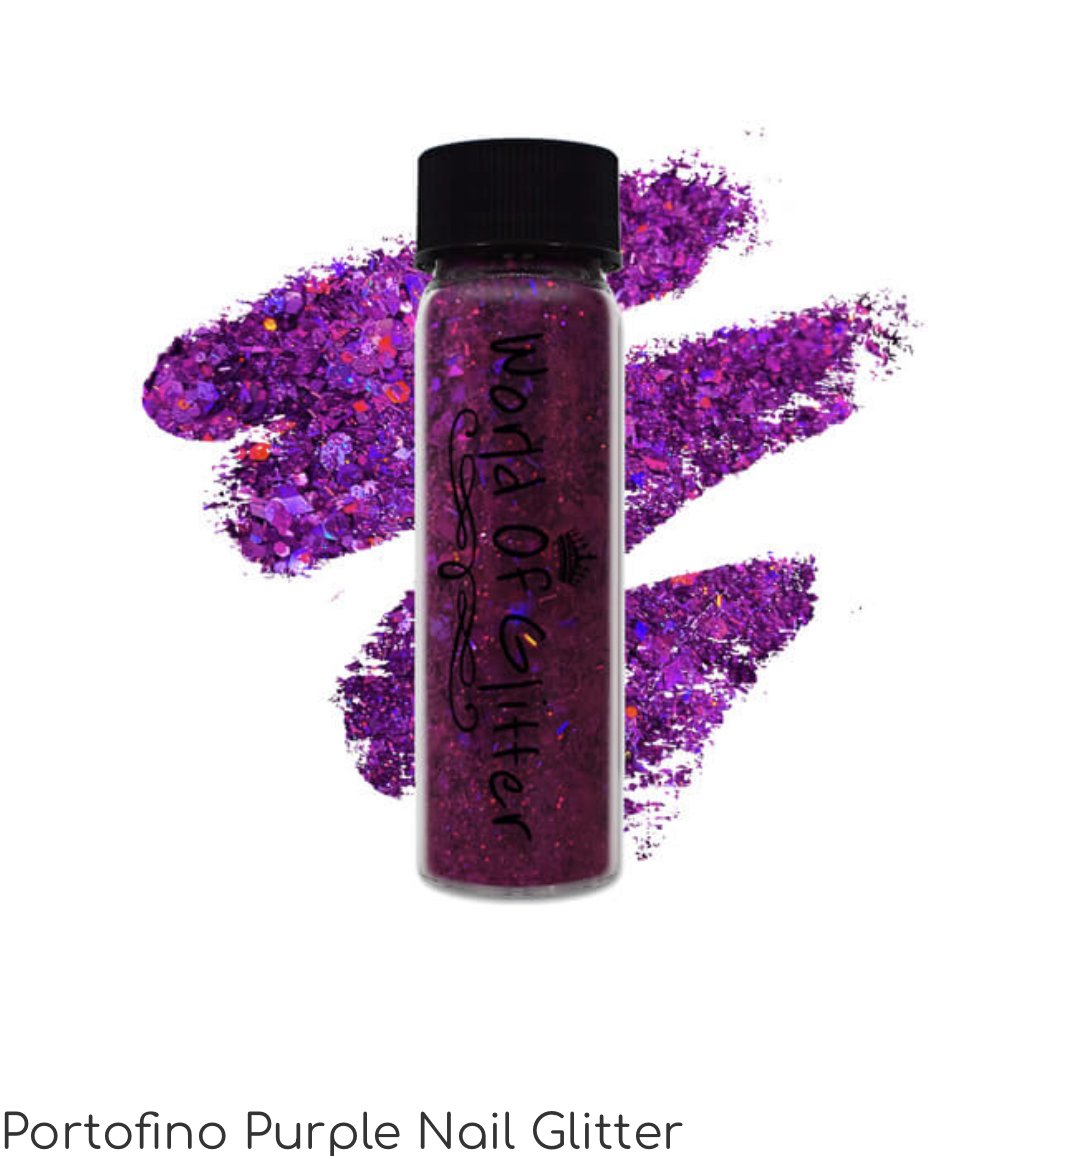 Portofino Purple Nail Glitter